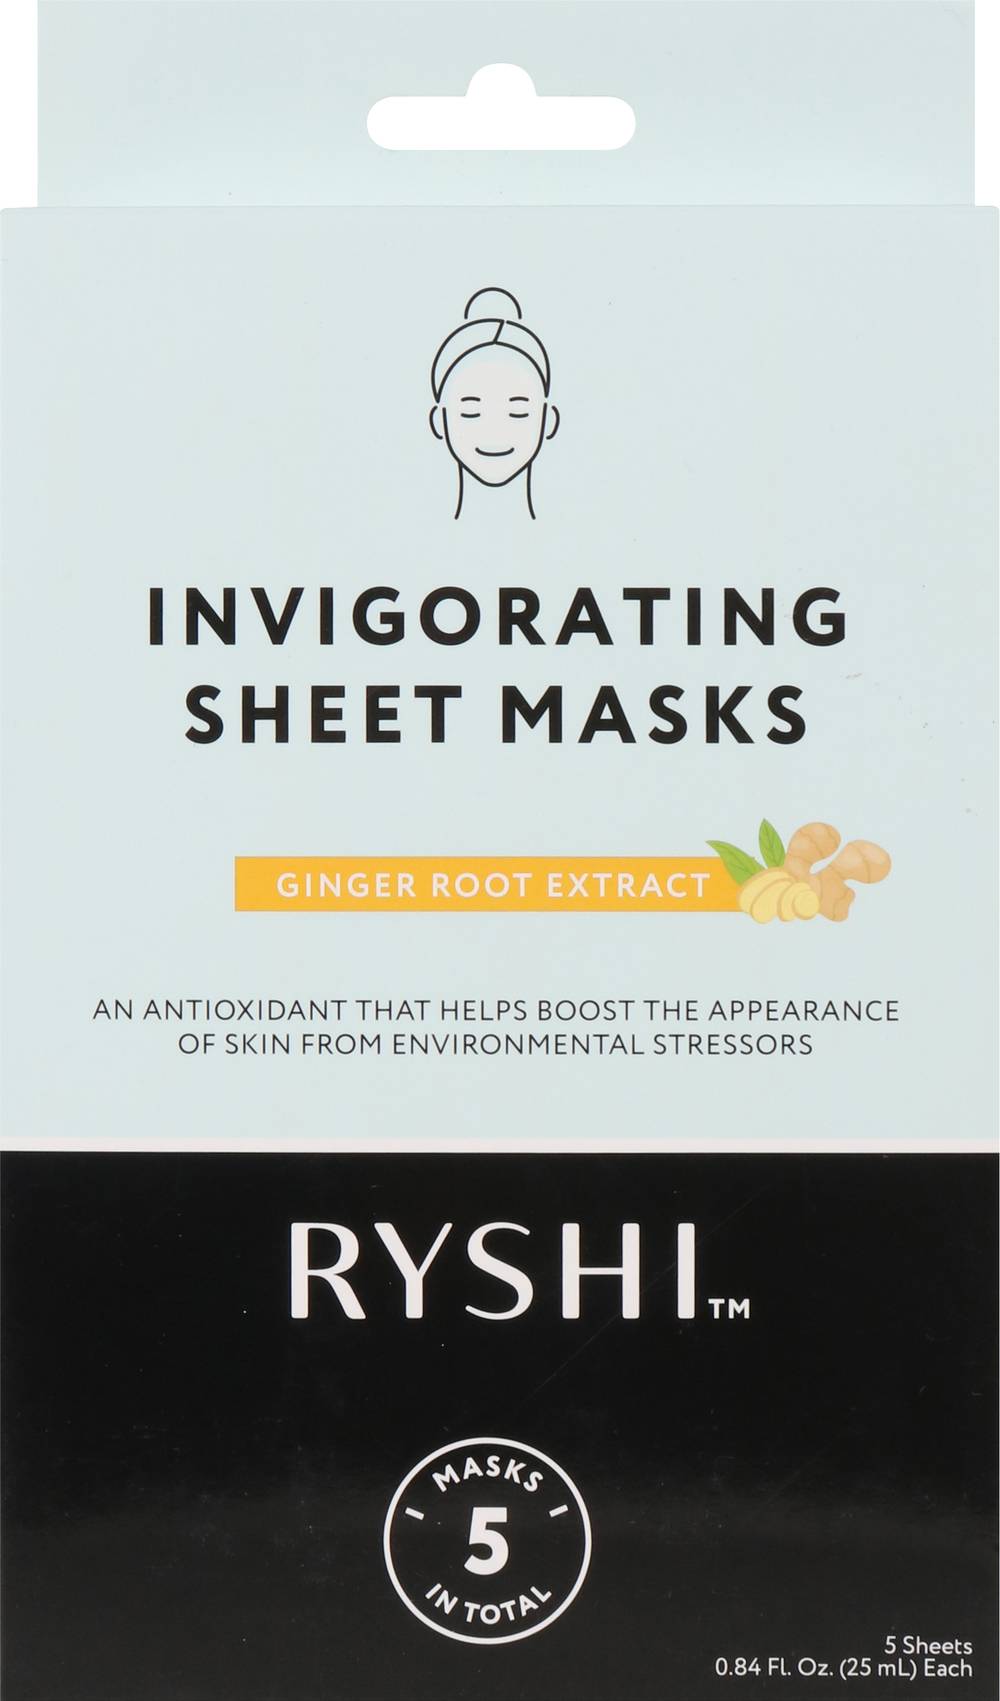 Ryshi Invigorating Sheet Masks